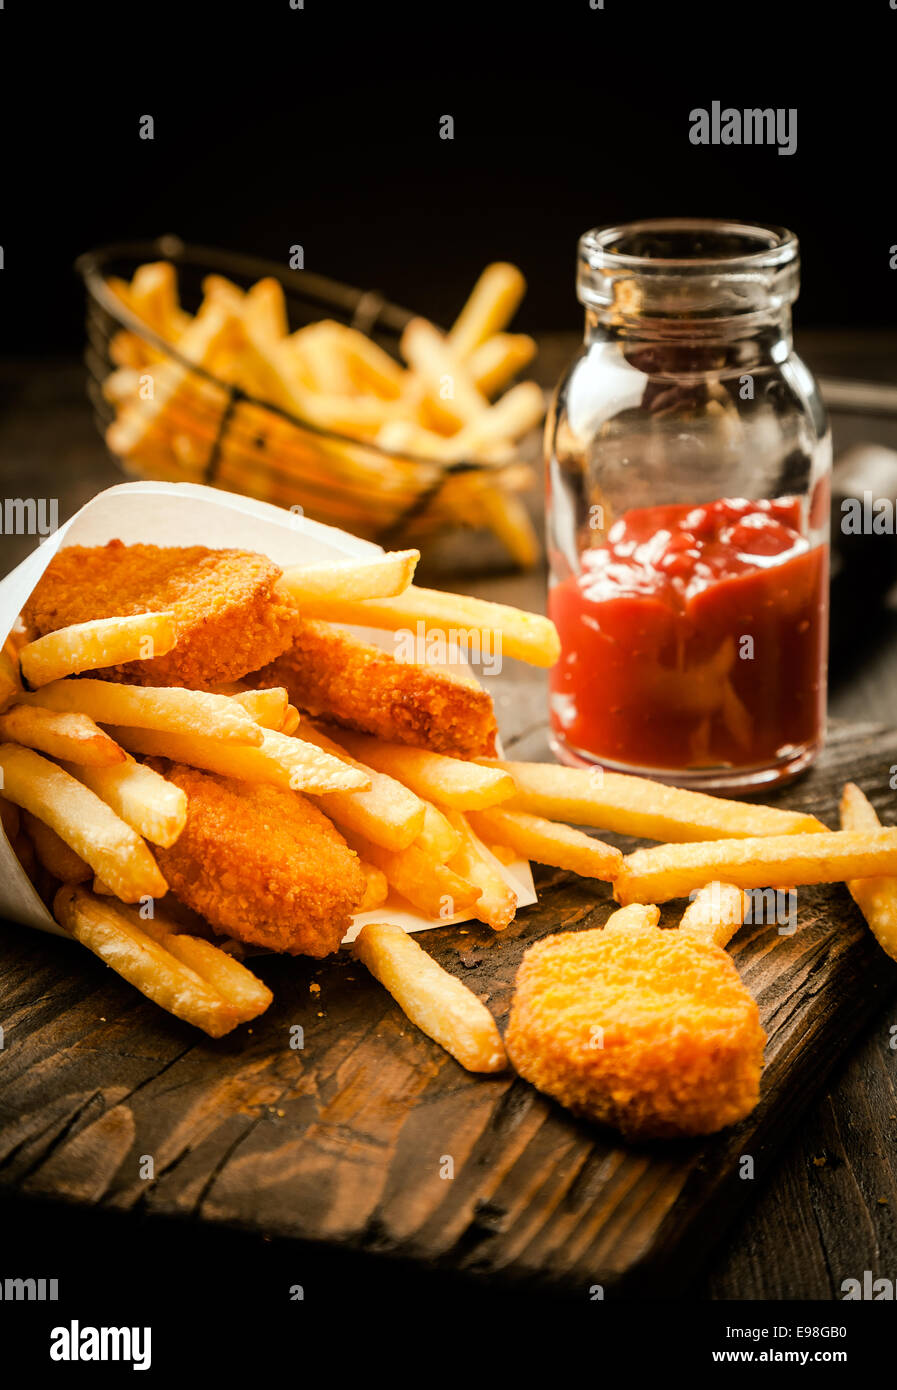 Fried golden crumbed les filets de poisson et frites servi dans un cône de papier avec une sauce à base de tomate ou dip sur une vieille table en bois grunge dans un magasin de poissons Banque D'Images